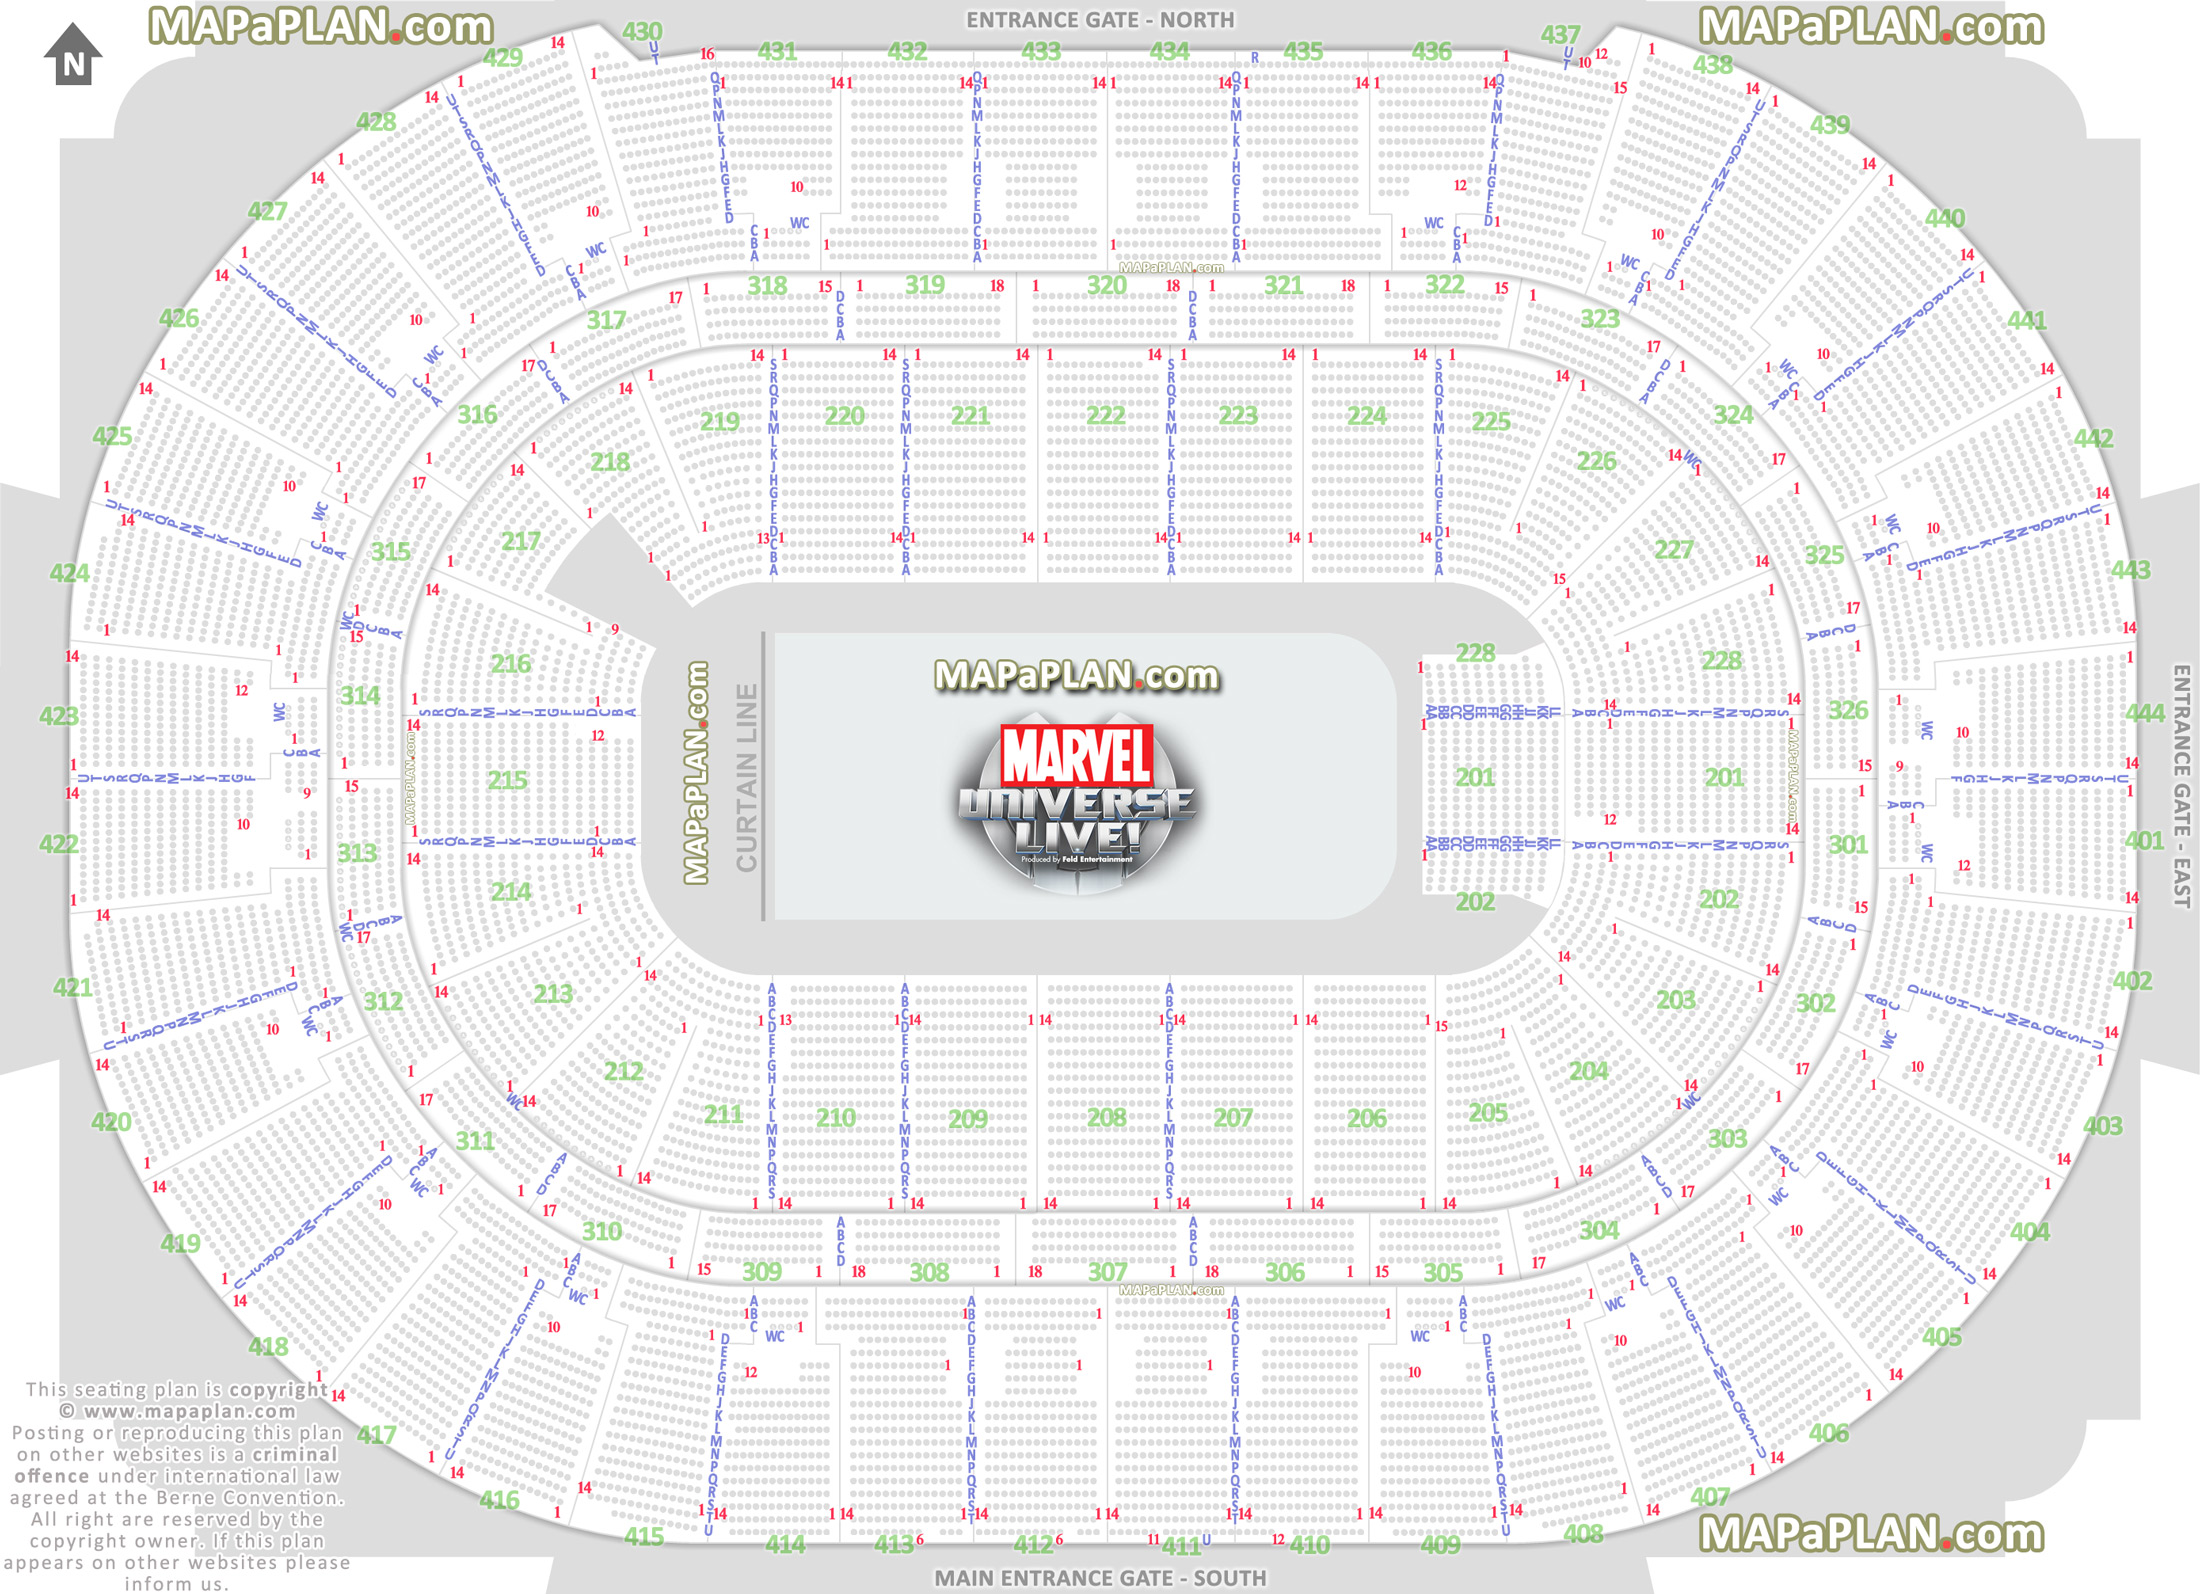 Honda Stadium Seating Chart